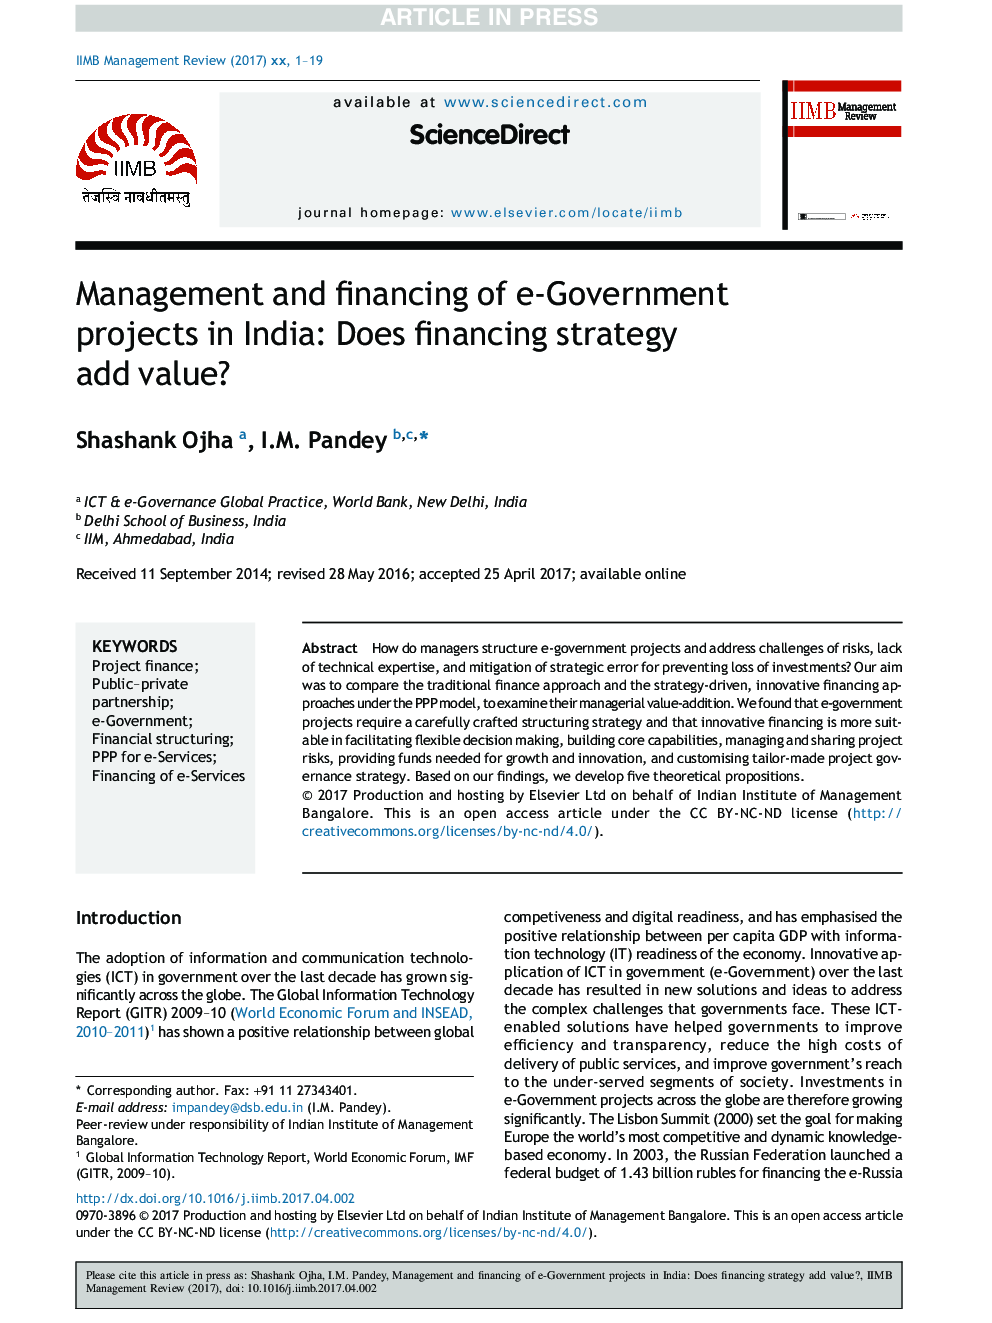 مدیریت و تامین مالی پروژه های دولت الکترونیک در هند: آیا استراتژی تامین مالی ارزش افزوده دارد؟ 